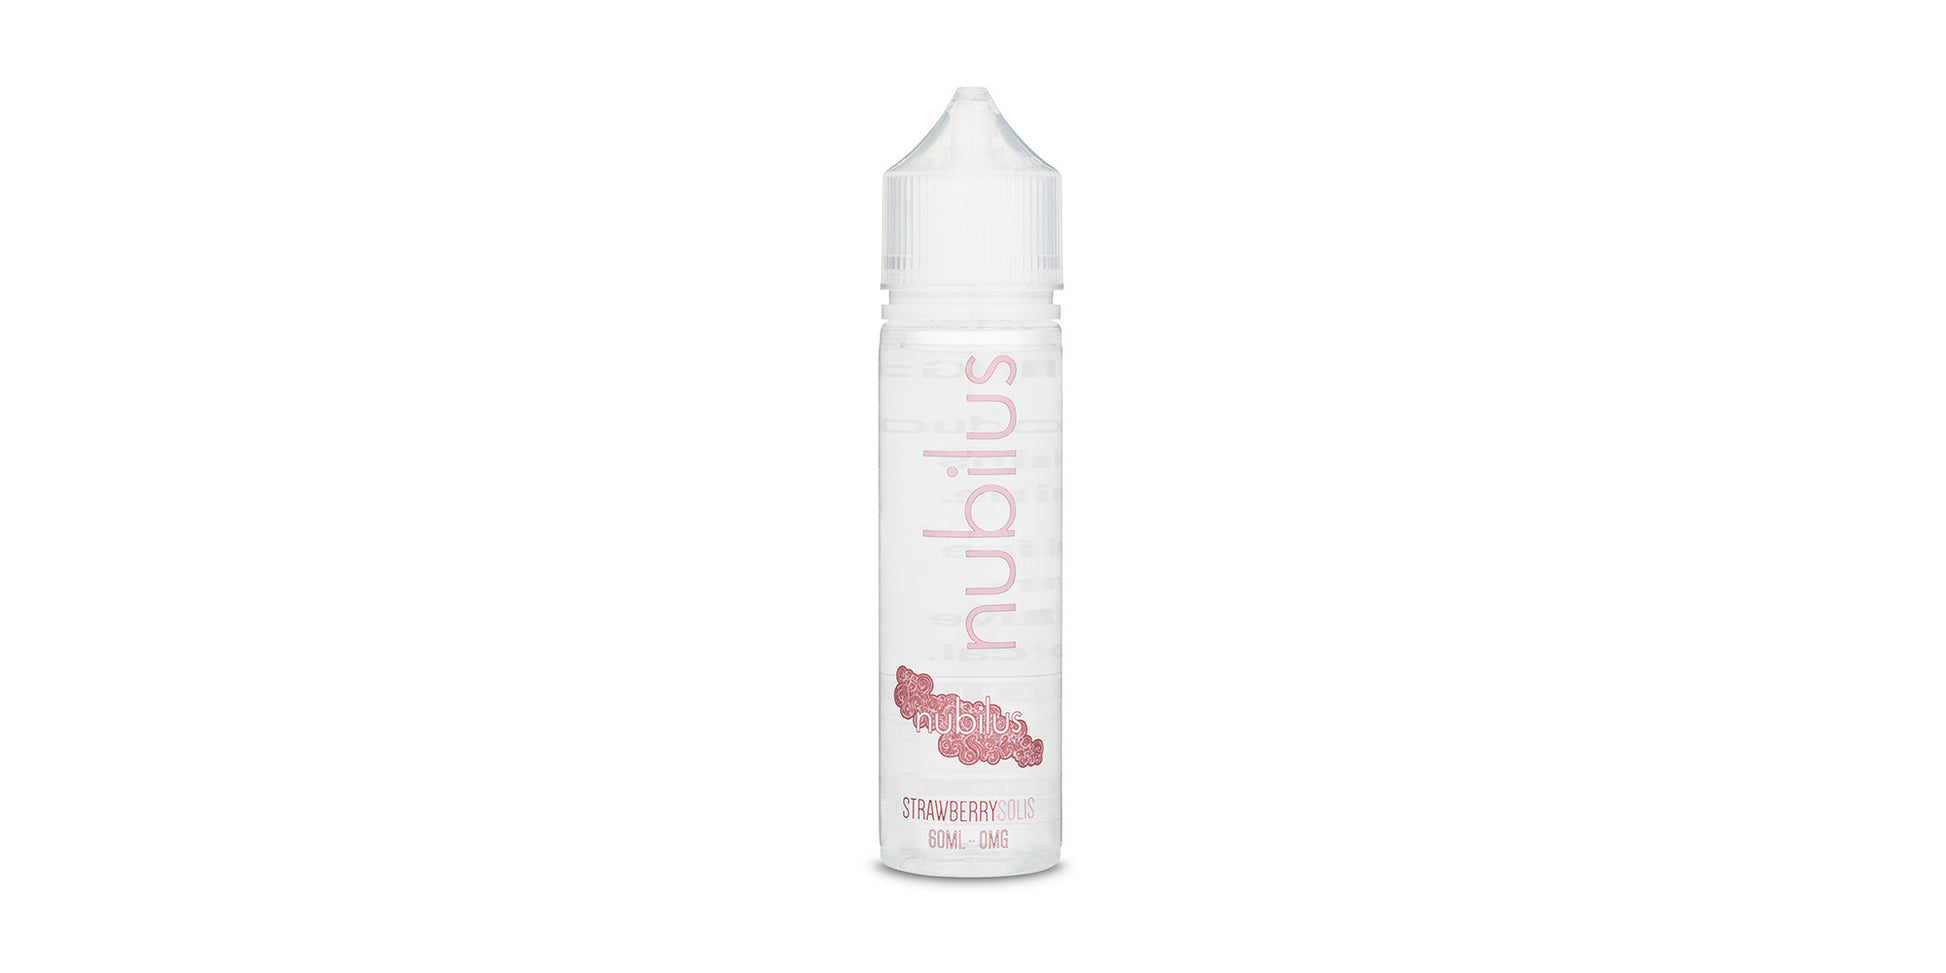 Nubilus - Strawberry Solis, ejuice